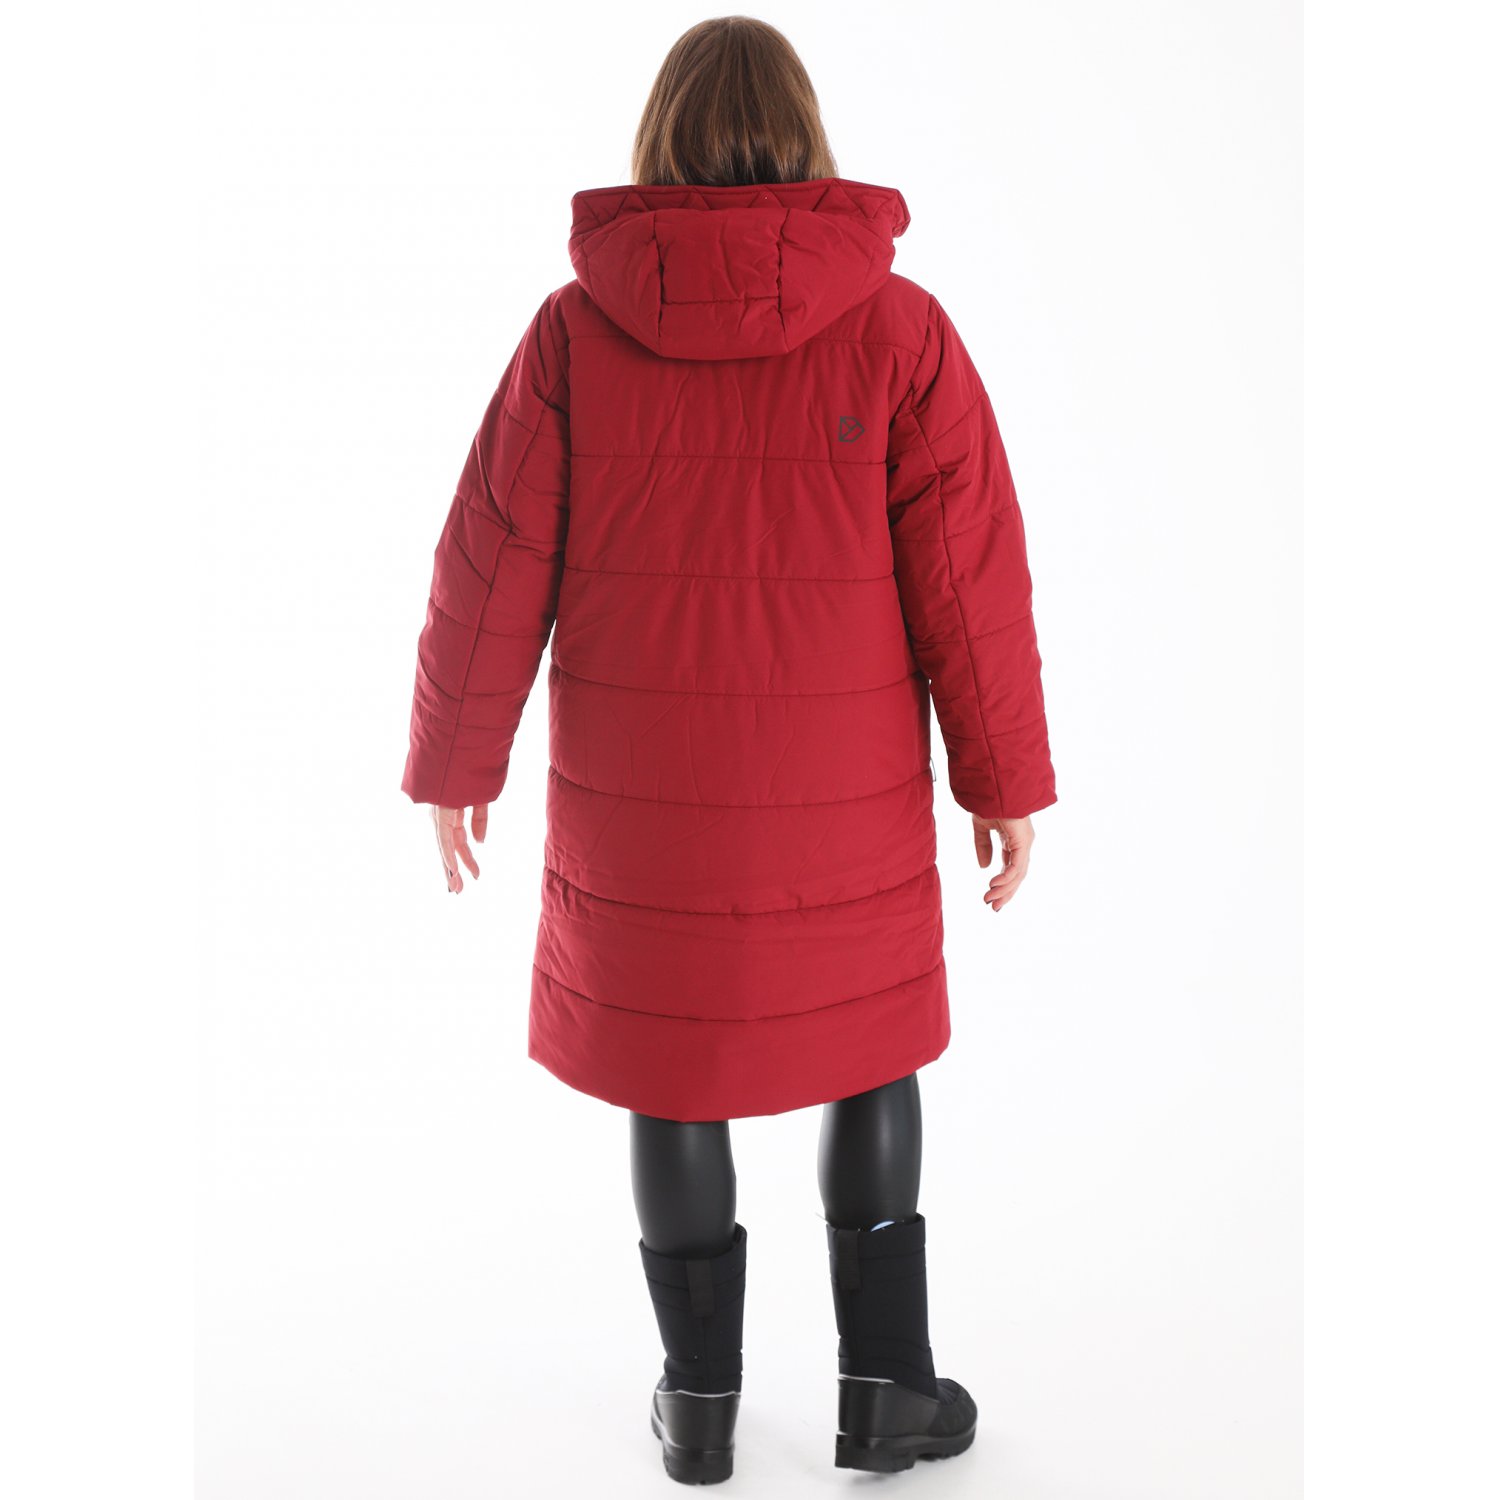 Куртка женская SANDRA купить 504280 Москве 91623 в 497 на (рубиново-красный)